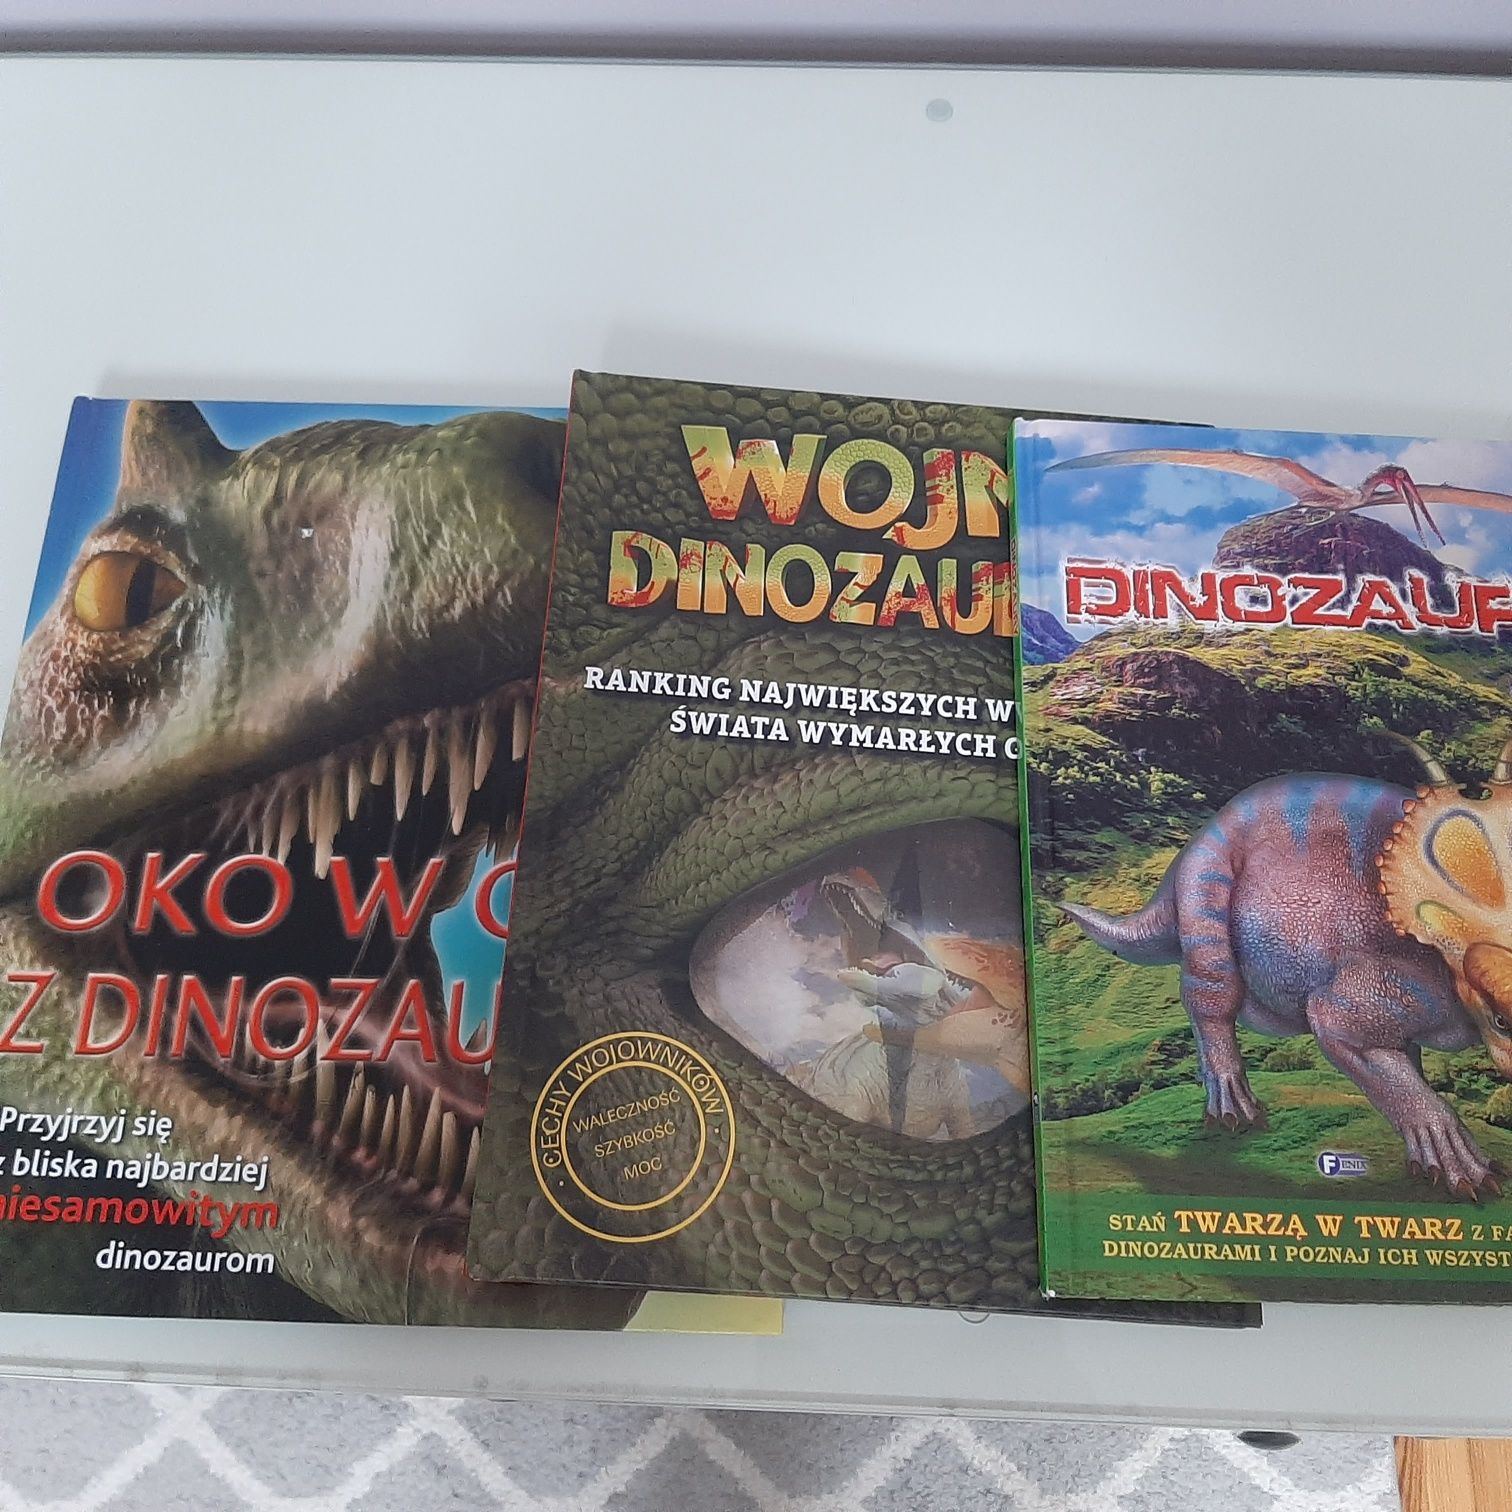 Dla fana dinozaurów figurki, książki